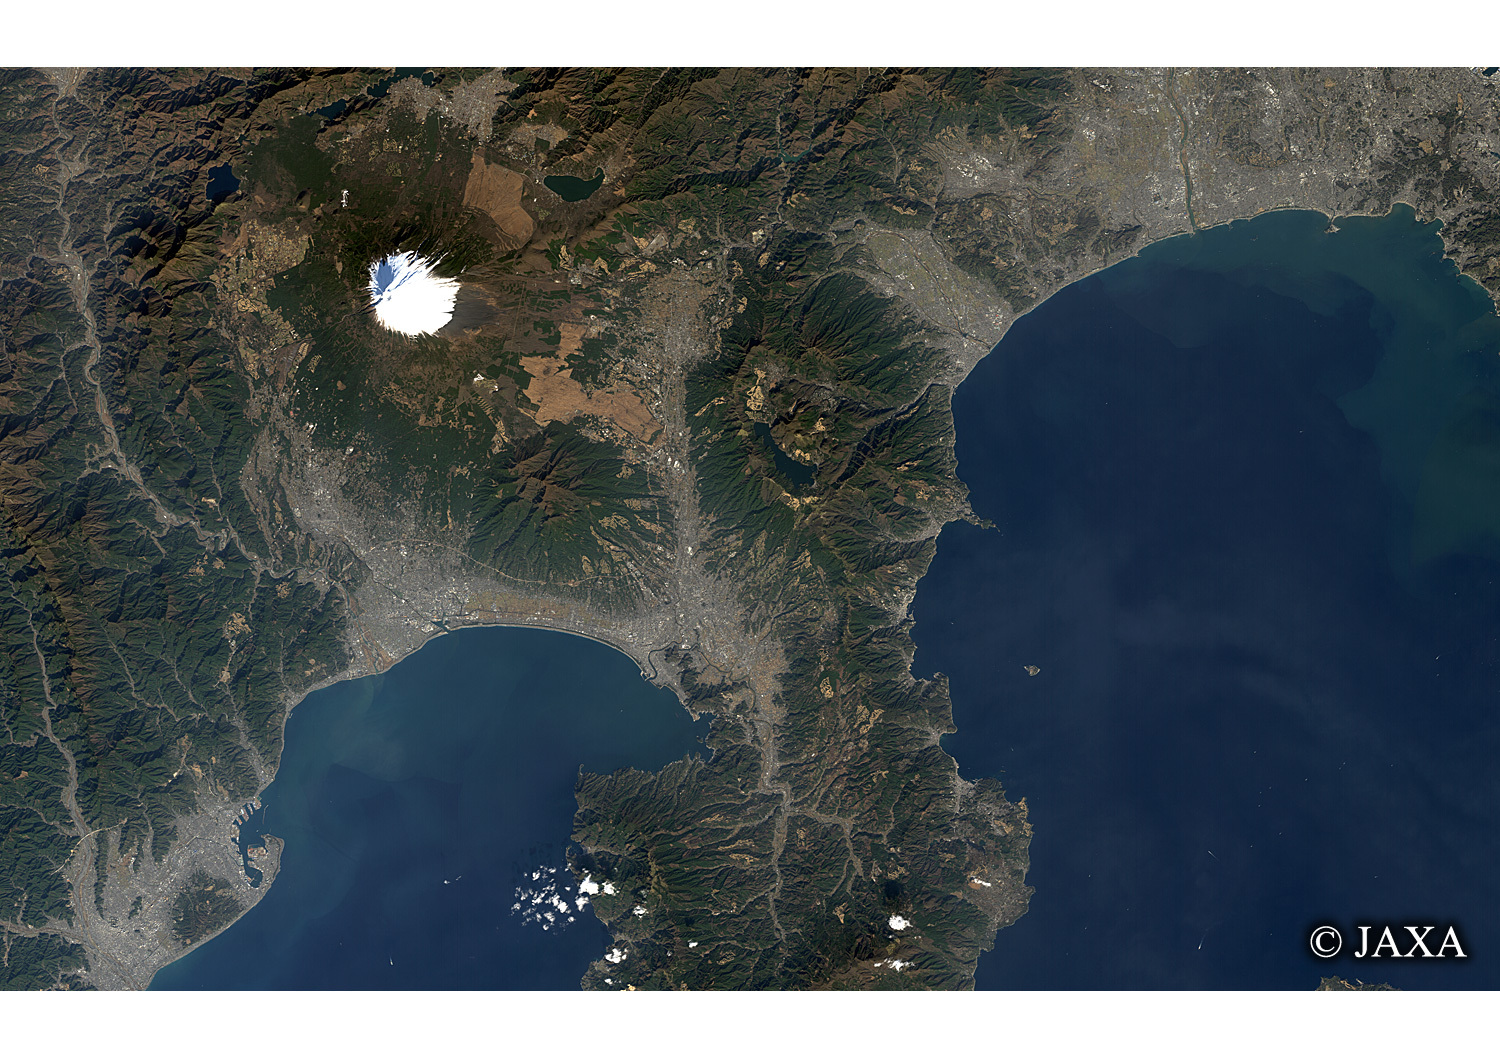 だいちから見た日本の都市 冬の富士山:衛星画像